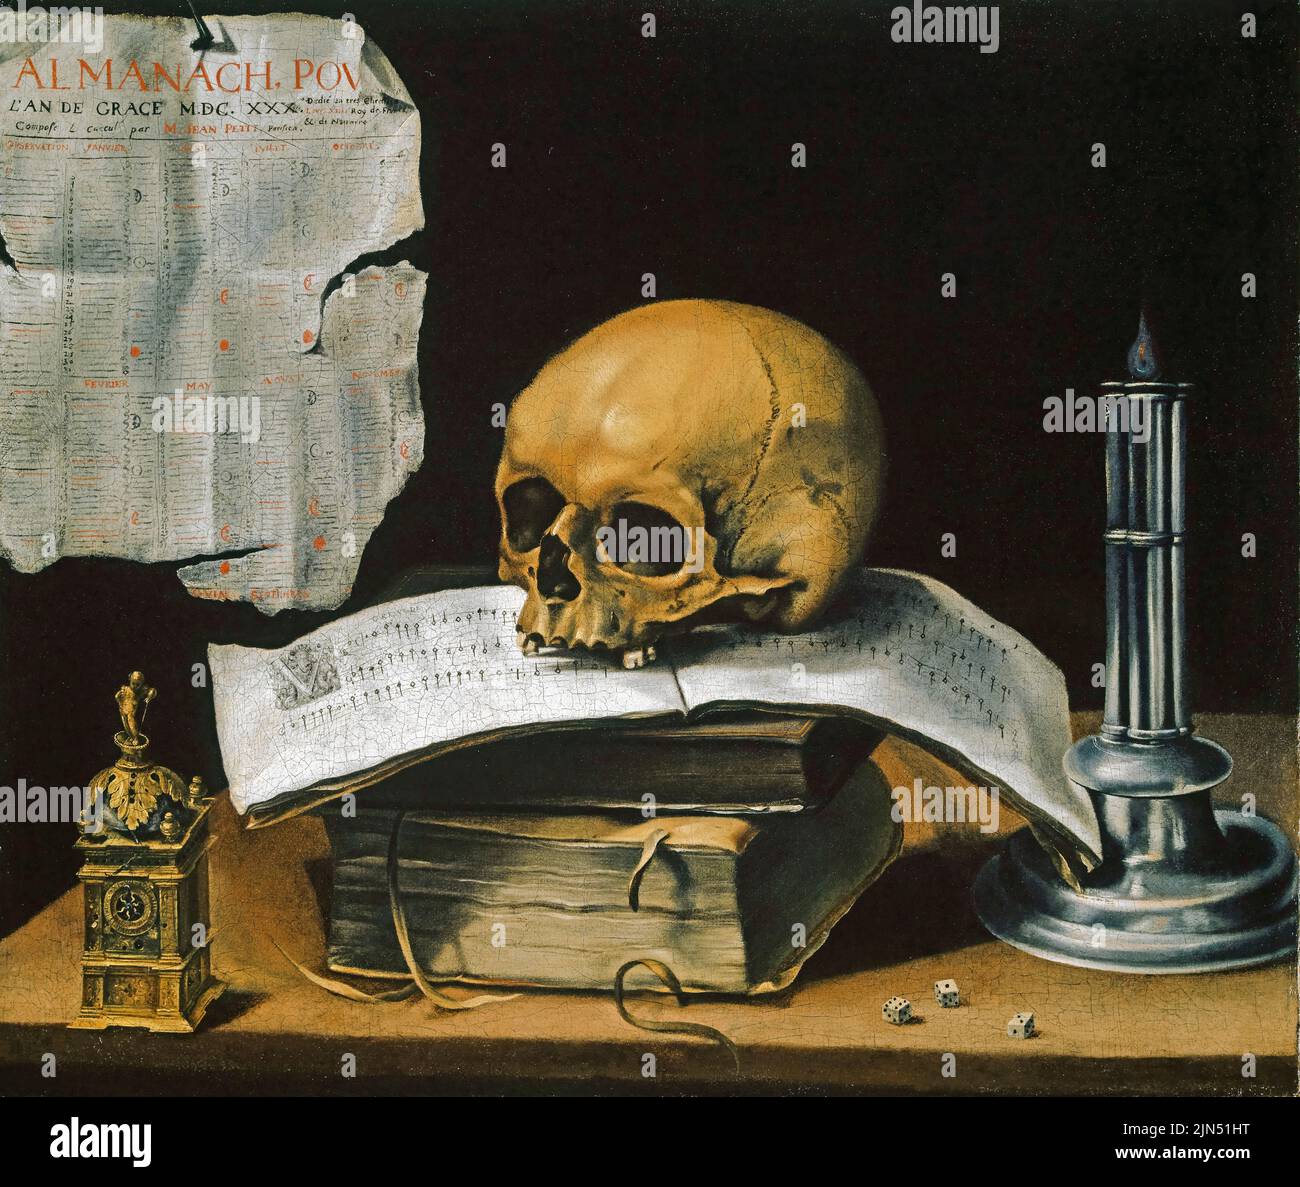 Sebastian Stoskopff, Vanitas Still Life with Skull, pintura al óleo sobre lienzo, 1630 Foto de stock